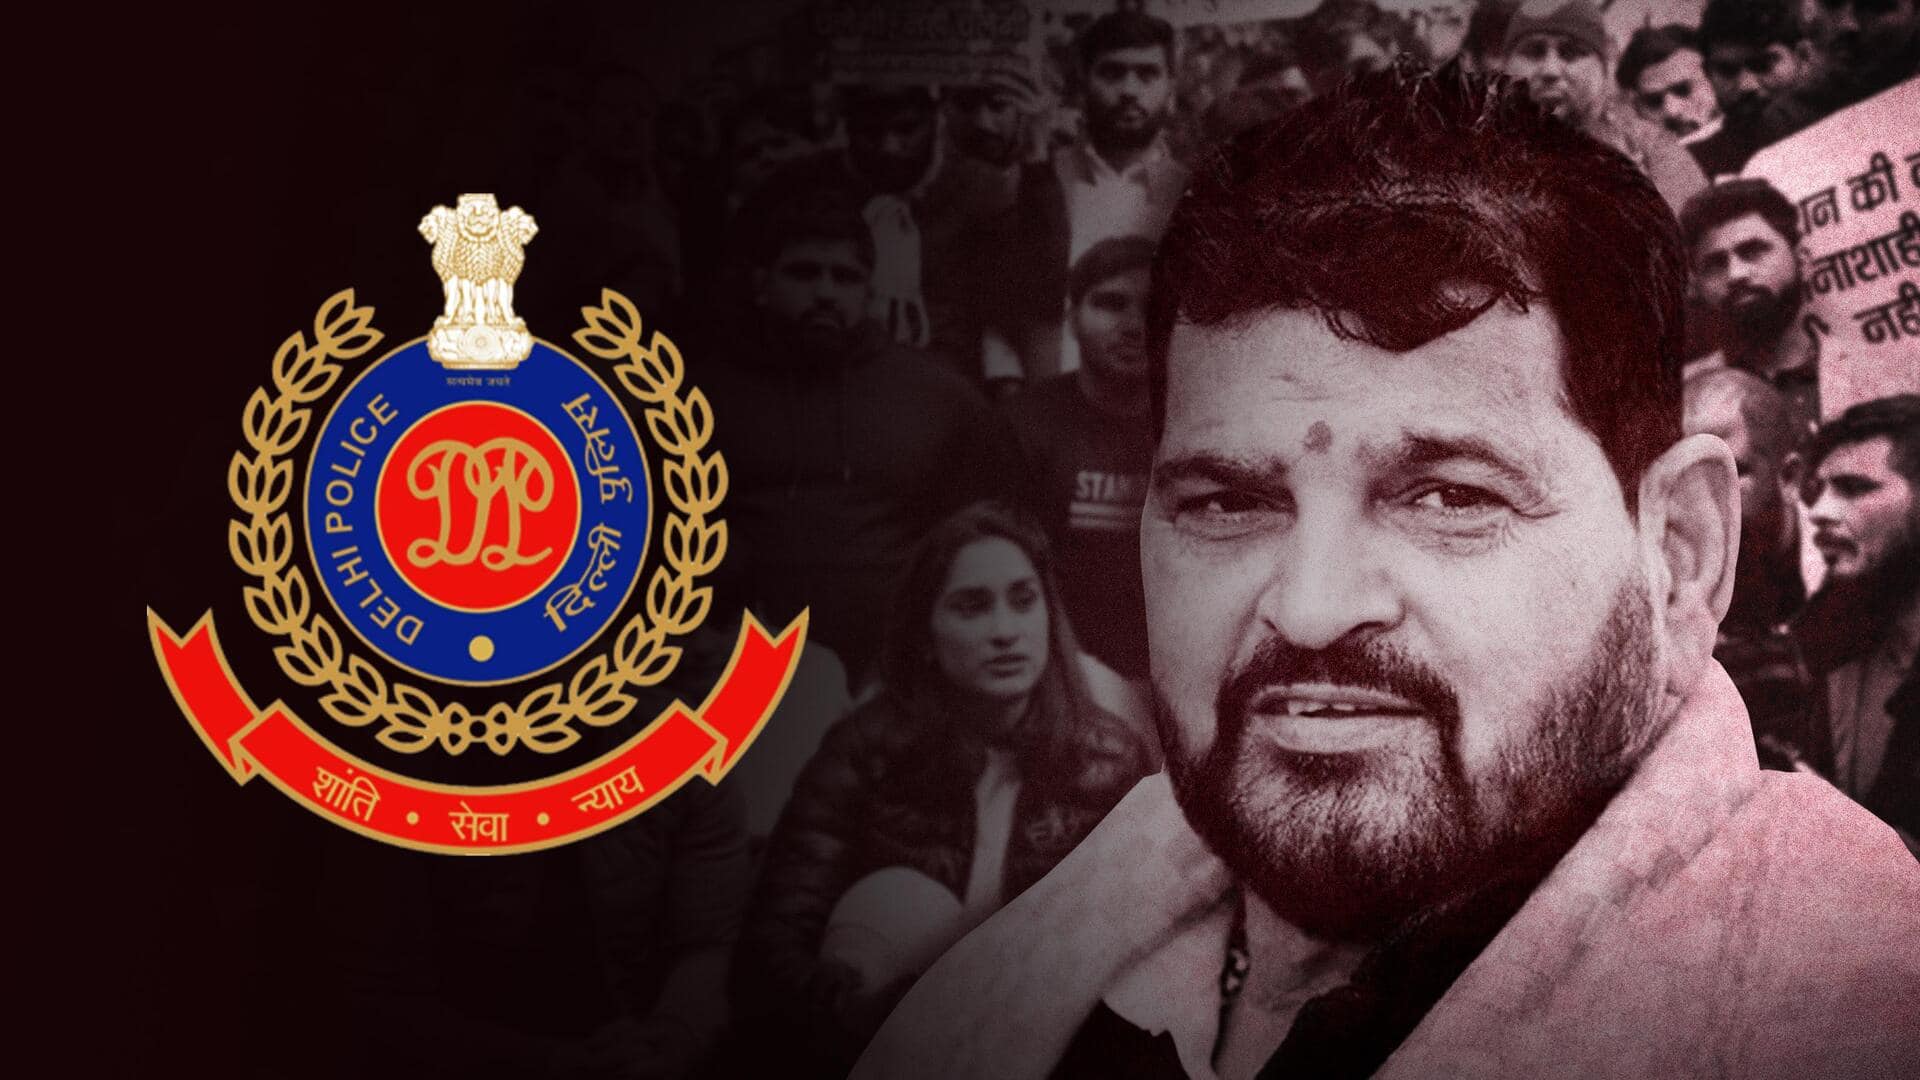 बृजभूषण शरण सिंह ने पहलवानों से छेड़छाड़ की, मुकदमा चलाया जाए और सजा मिले- दिल्‍ली पुलिस